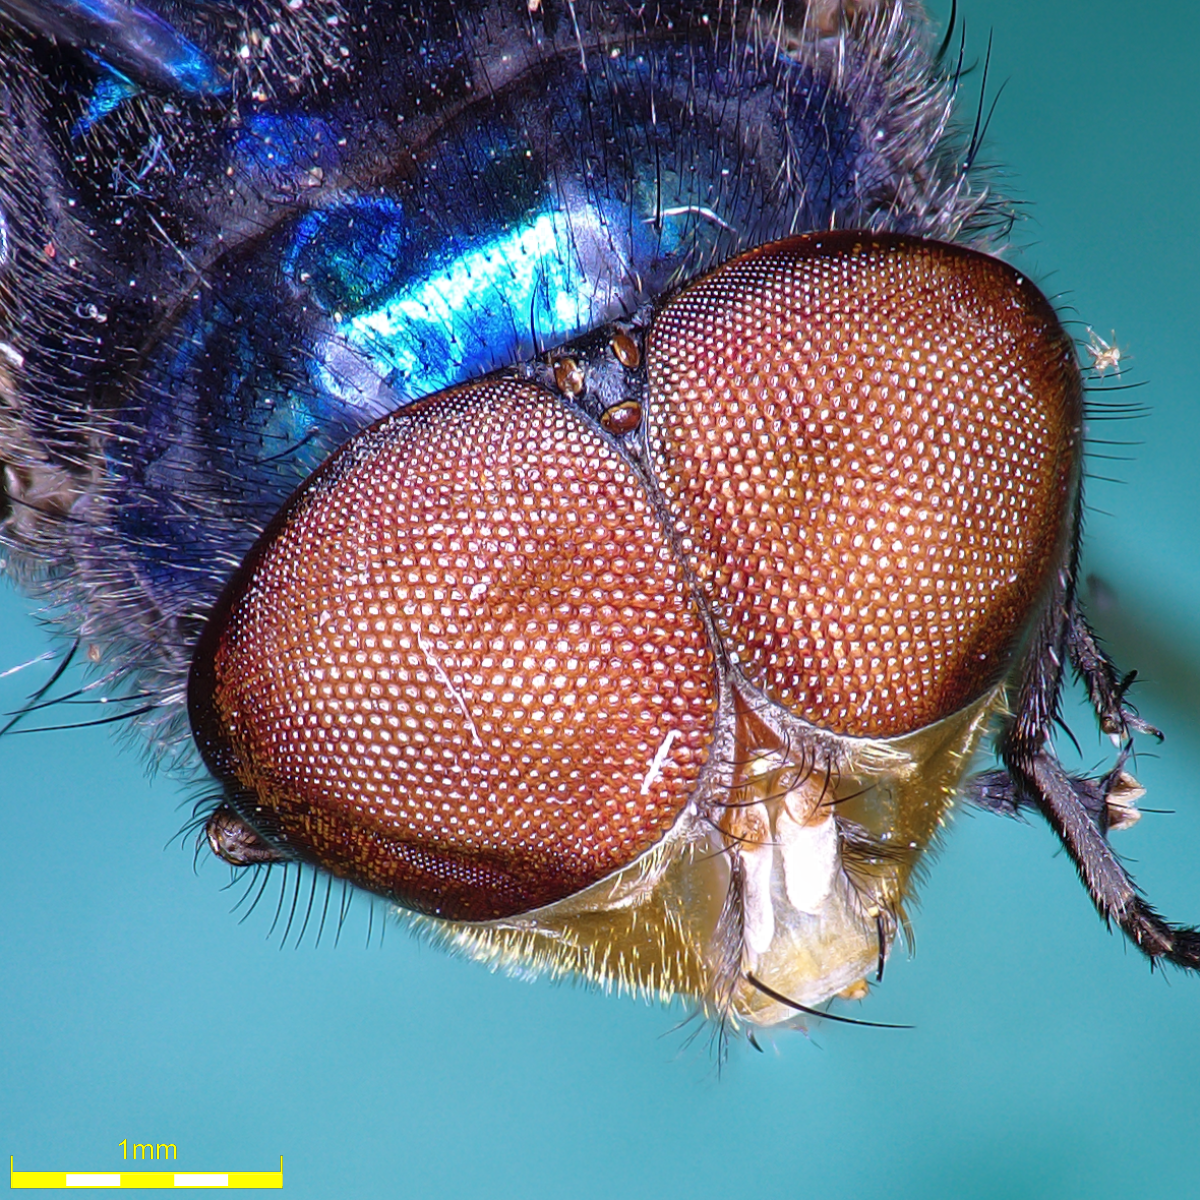 Messung der Merkmale von Fliegen für die medizinische Entomologie